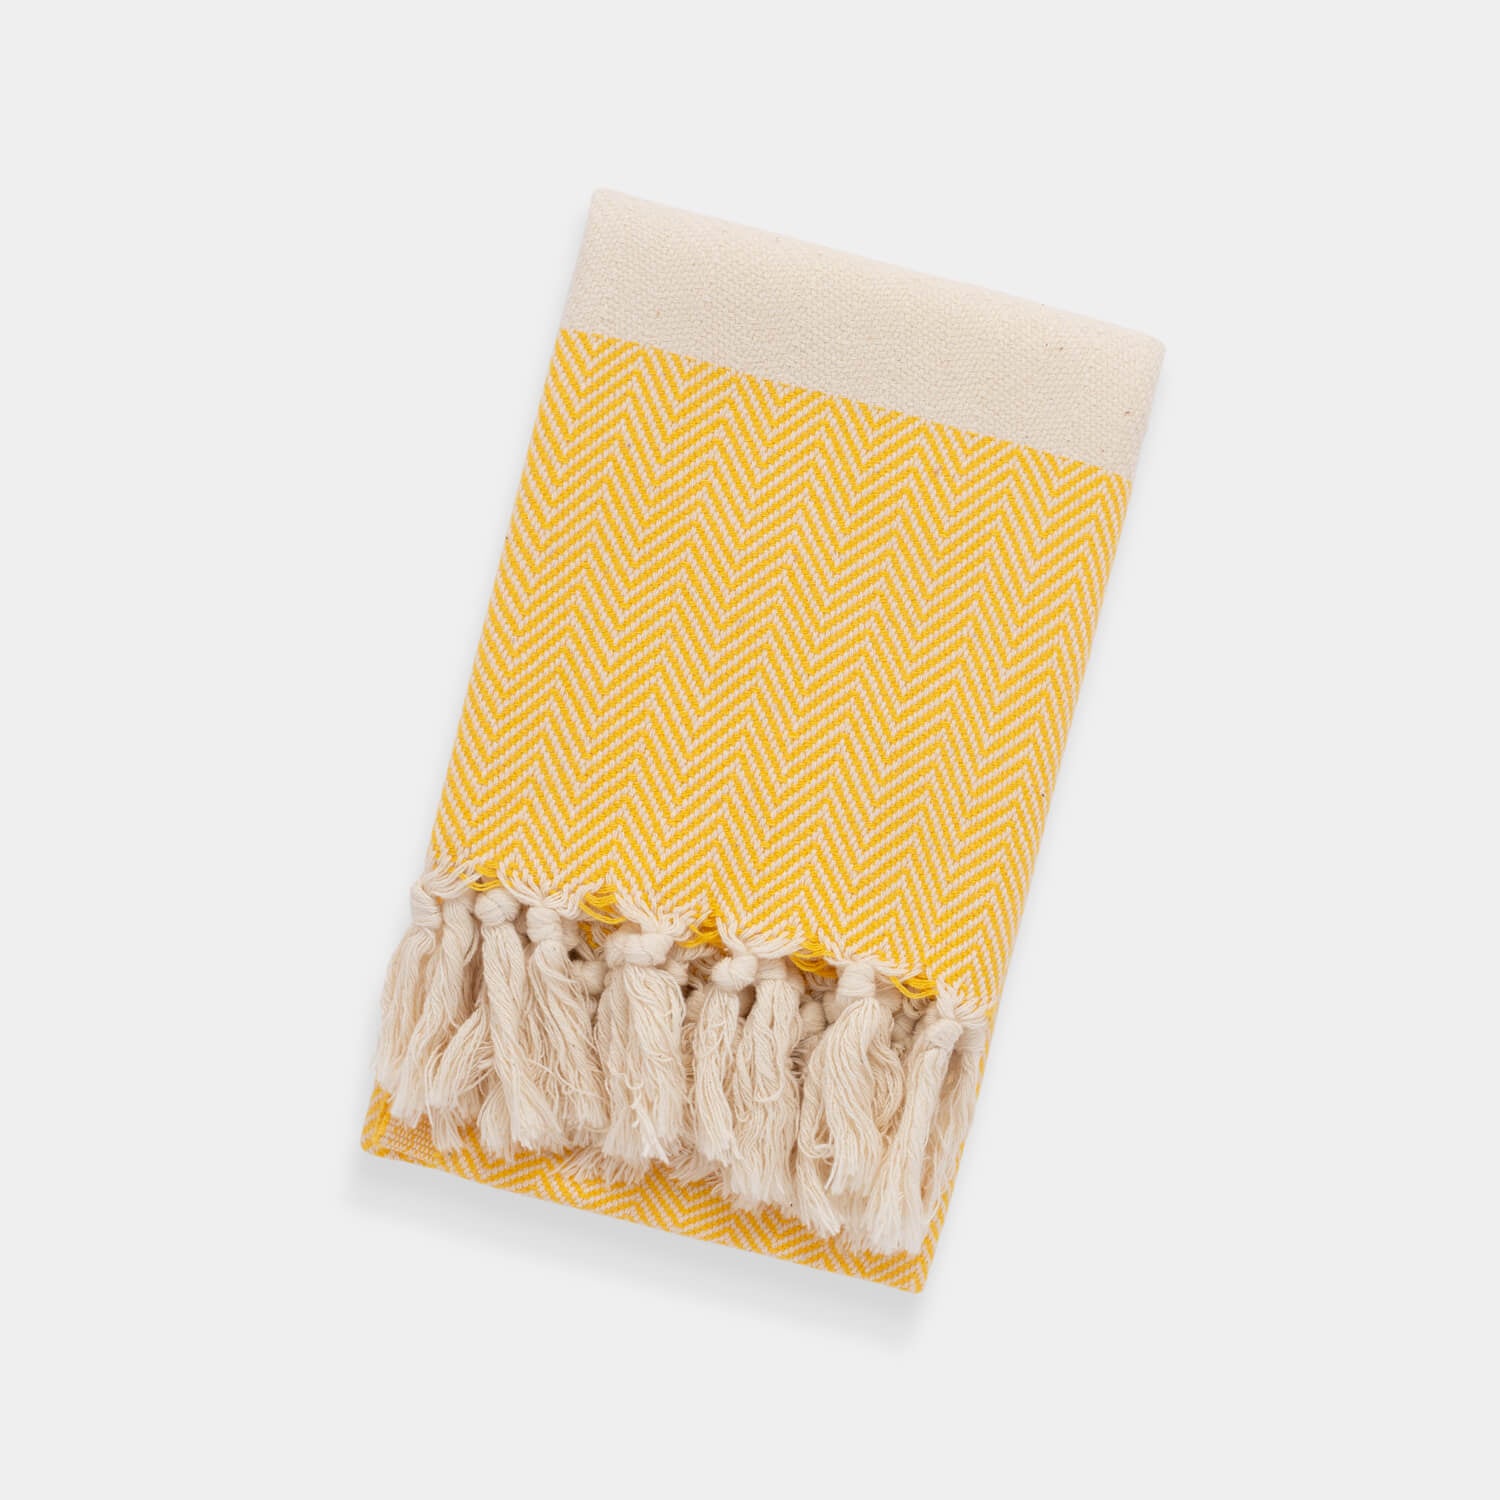 Herringbone Yellow Hand Towel Image 2